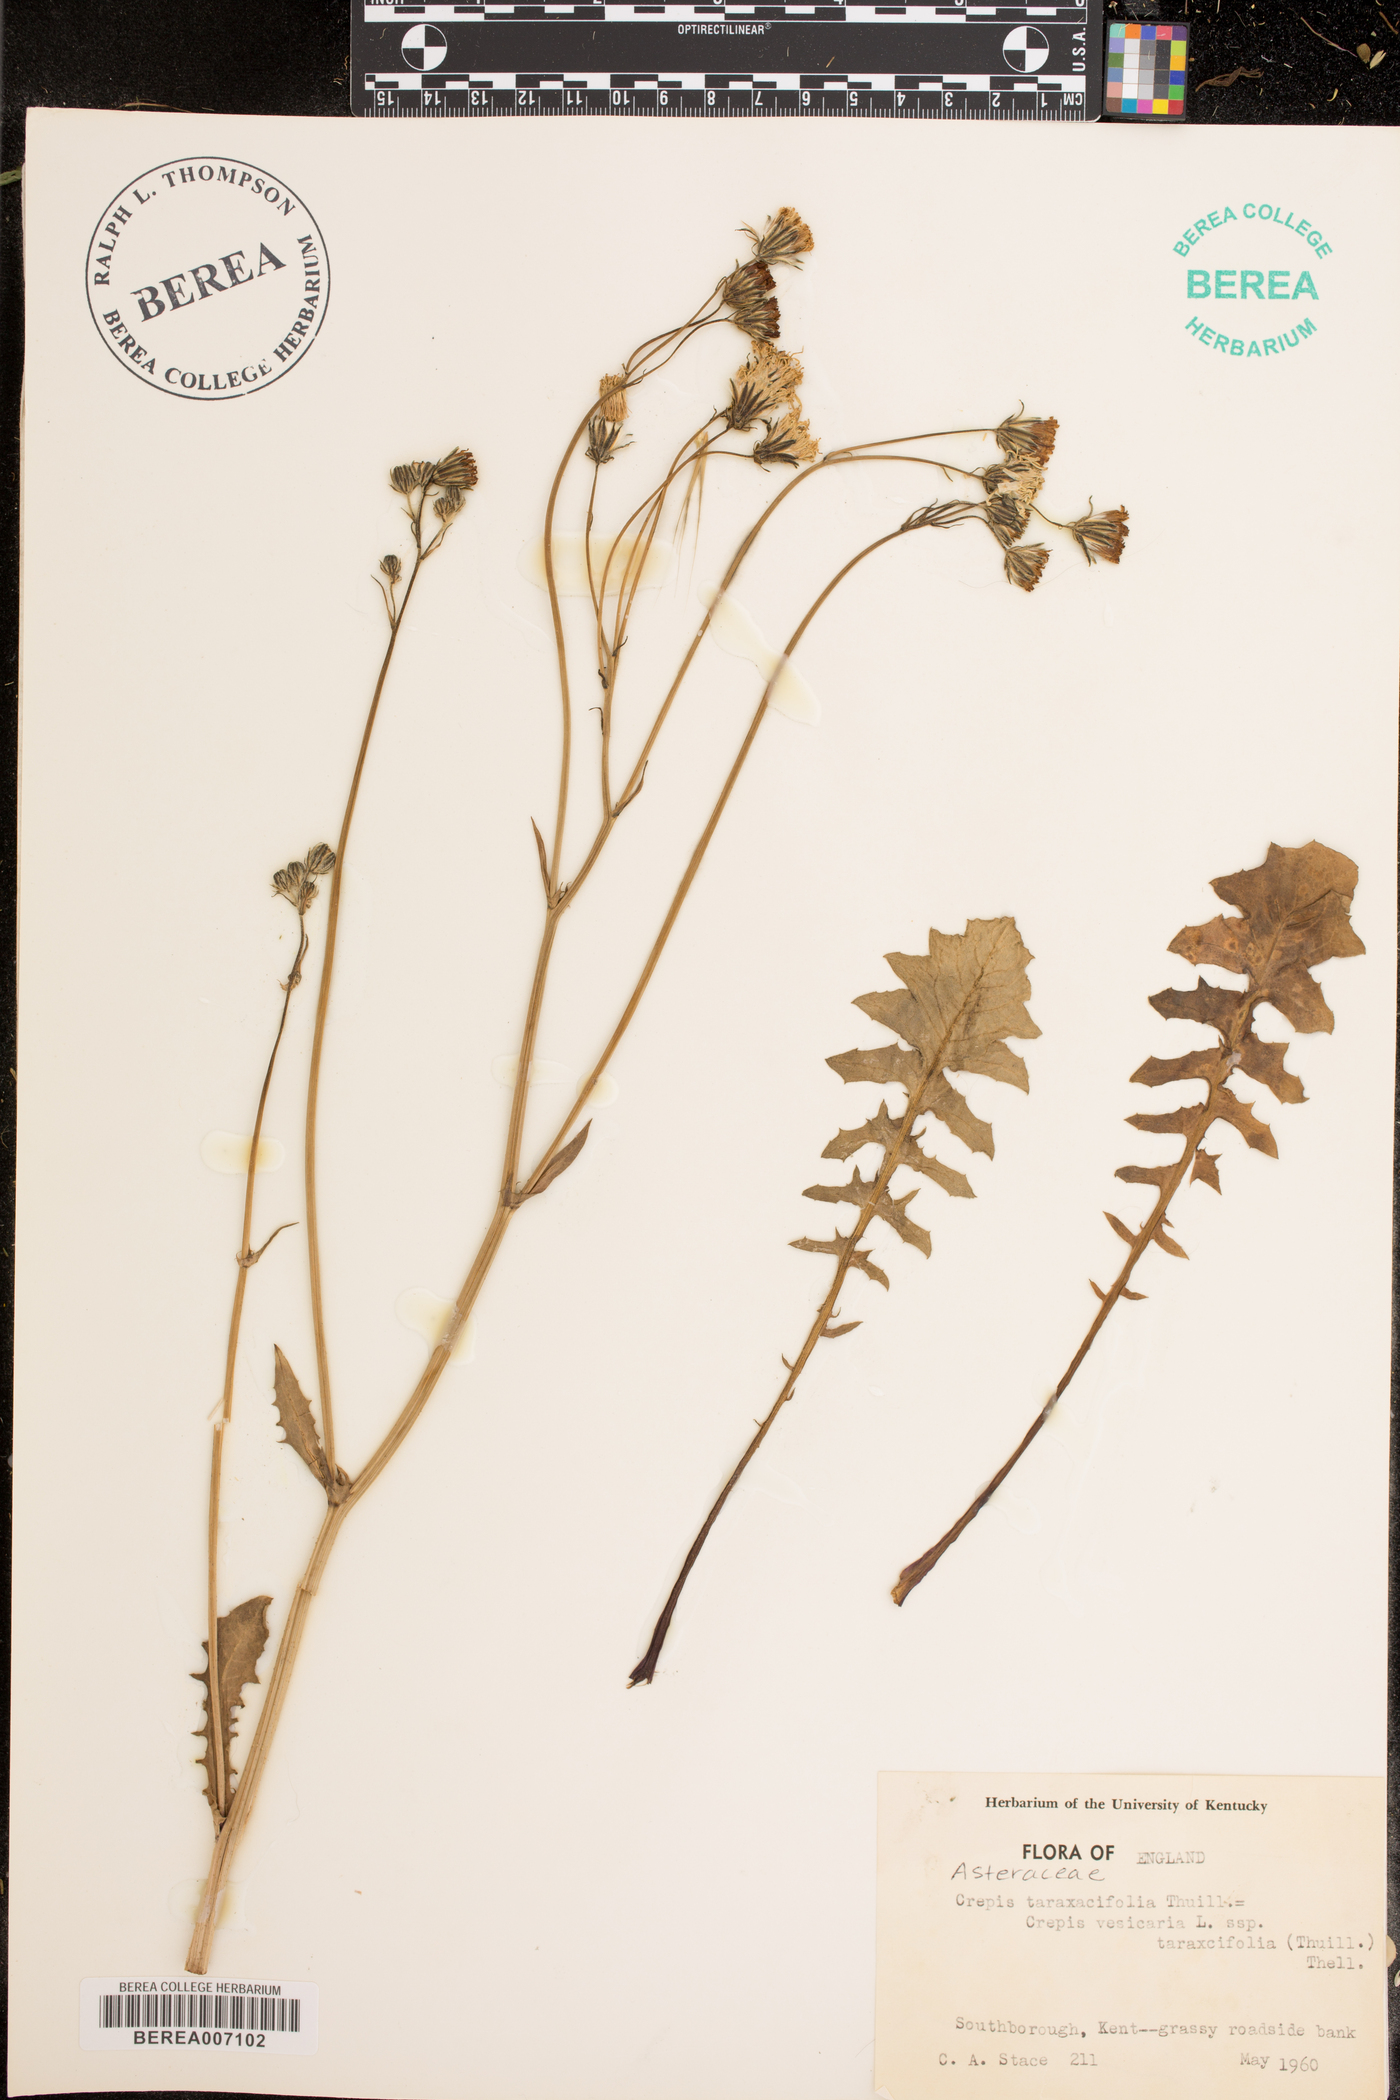 Crepis vesicaria subsp. taraxacifolia image